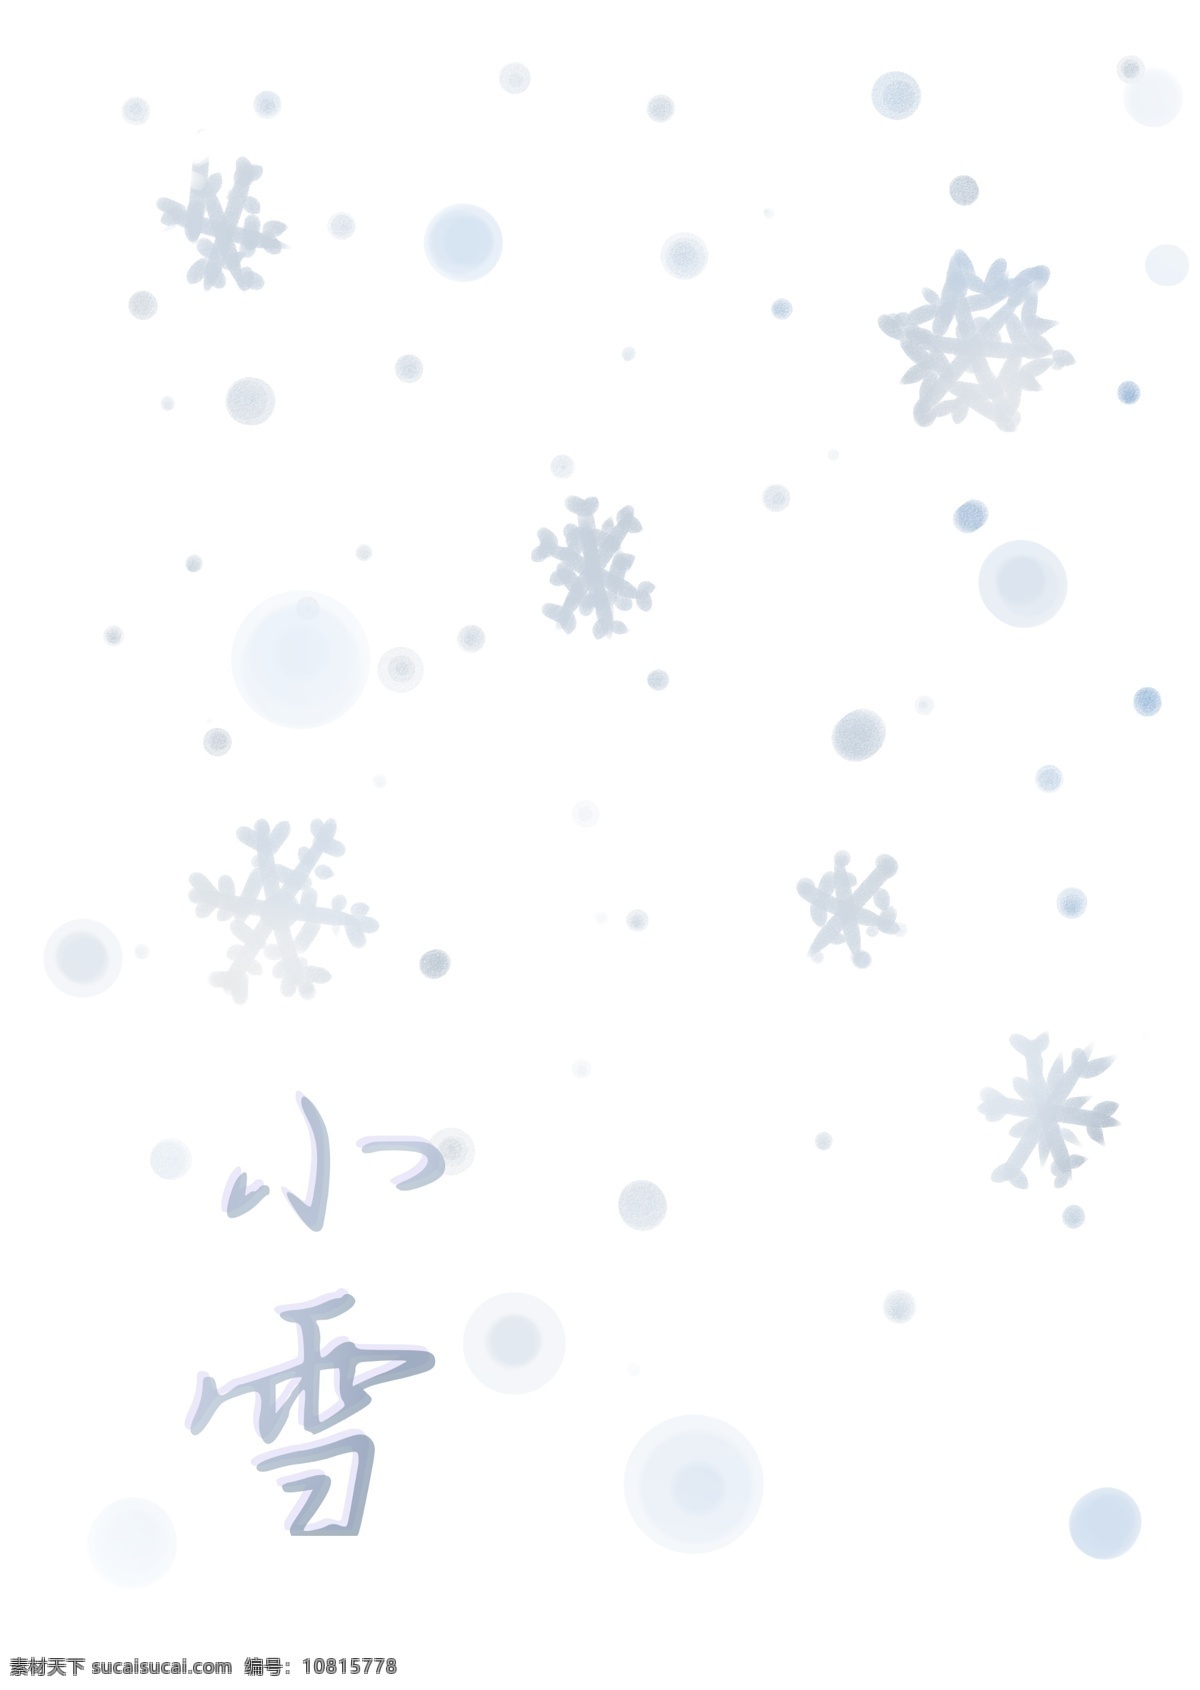 手绘 雪花 小雪 节气 背景 飘雪 下雪 雪景 白雪 圣诞 冬季 冬天 漂浮 清新 冬日 圣诞节